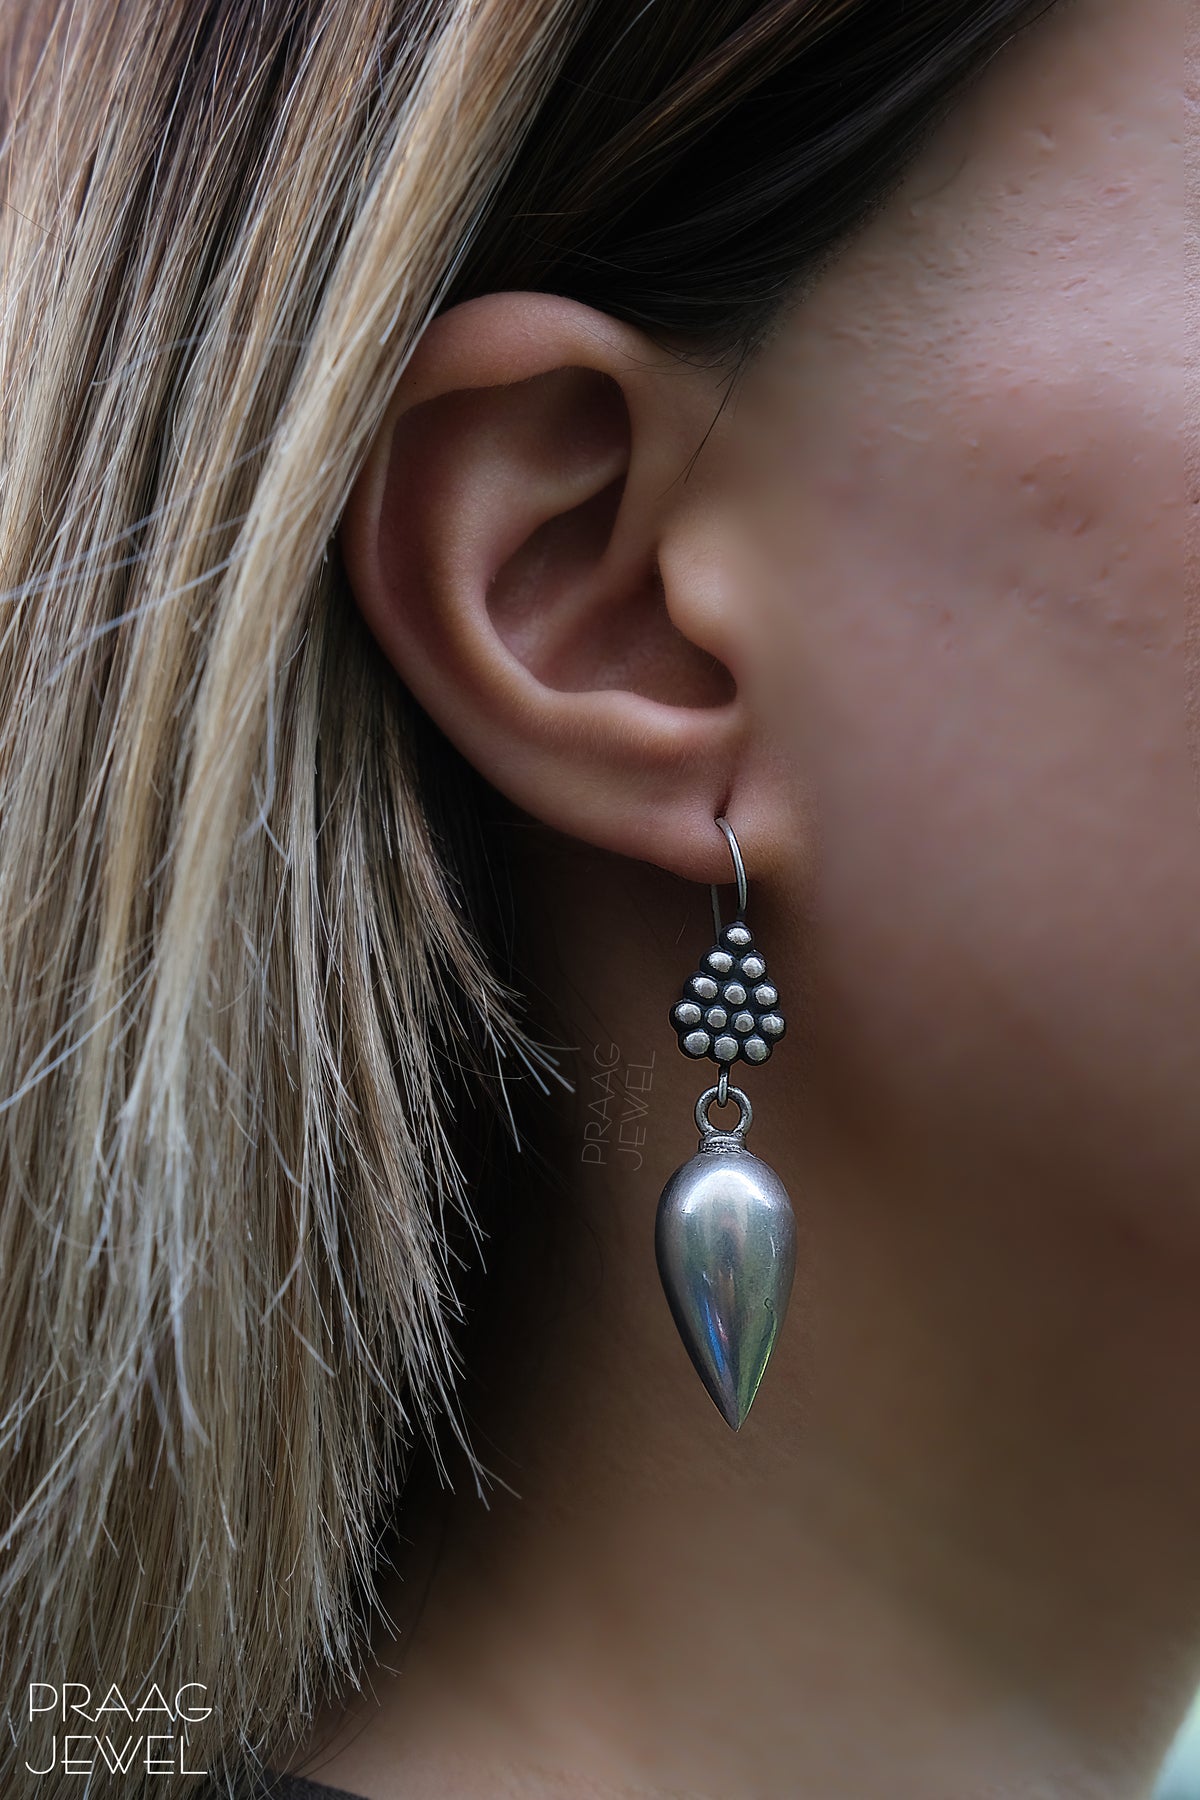 Silver Earrings | Silver Earrings Image | silver earring | sterling silver earring | 925 silver earring | earrings for girl 